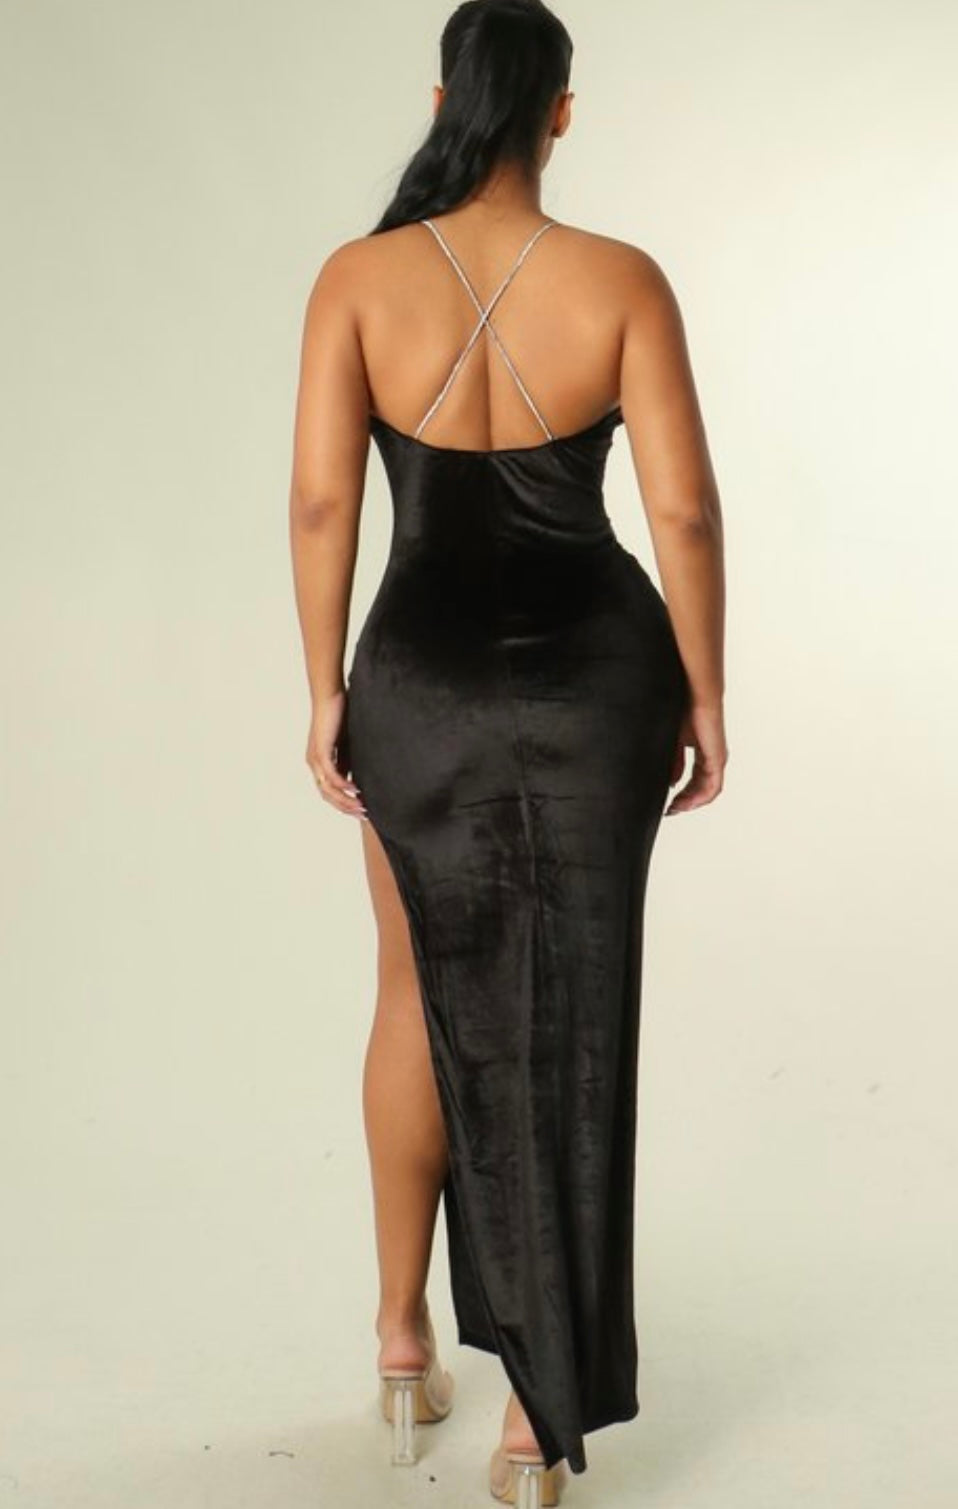 The “Elevated Glam” Velvet Dress In Black